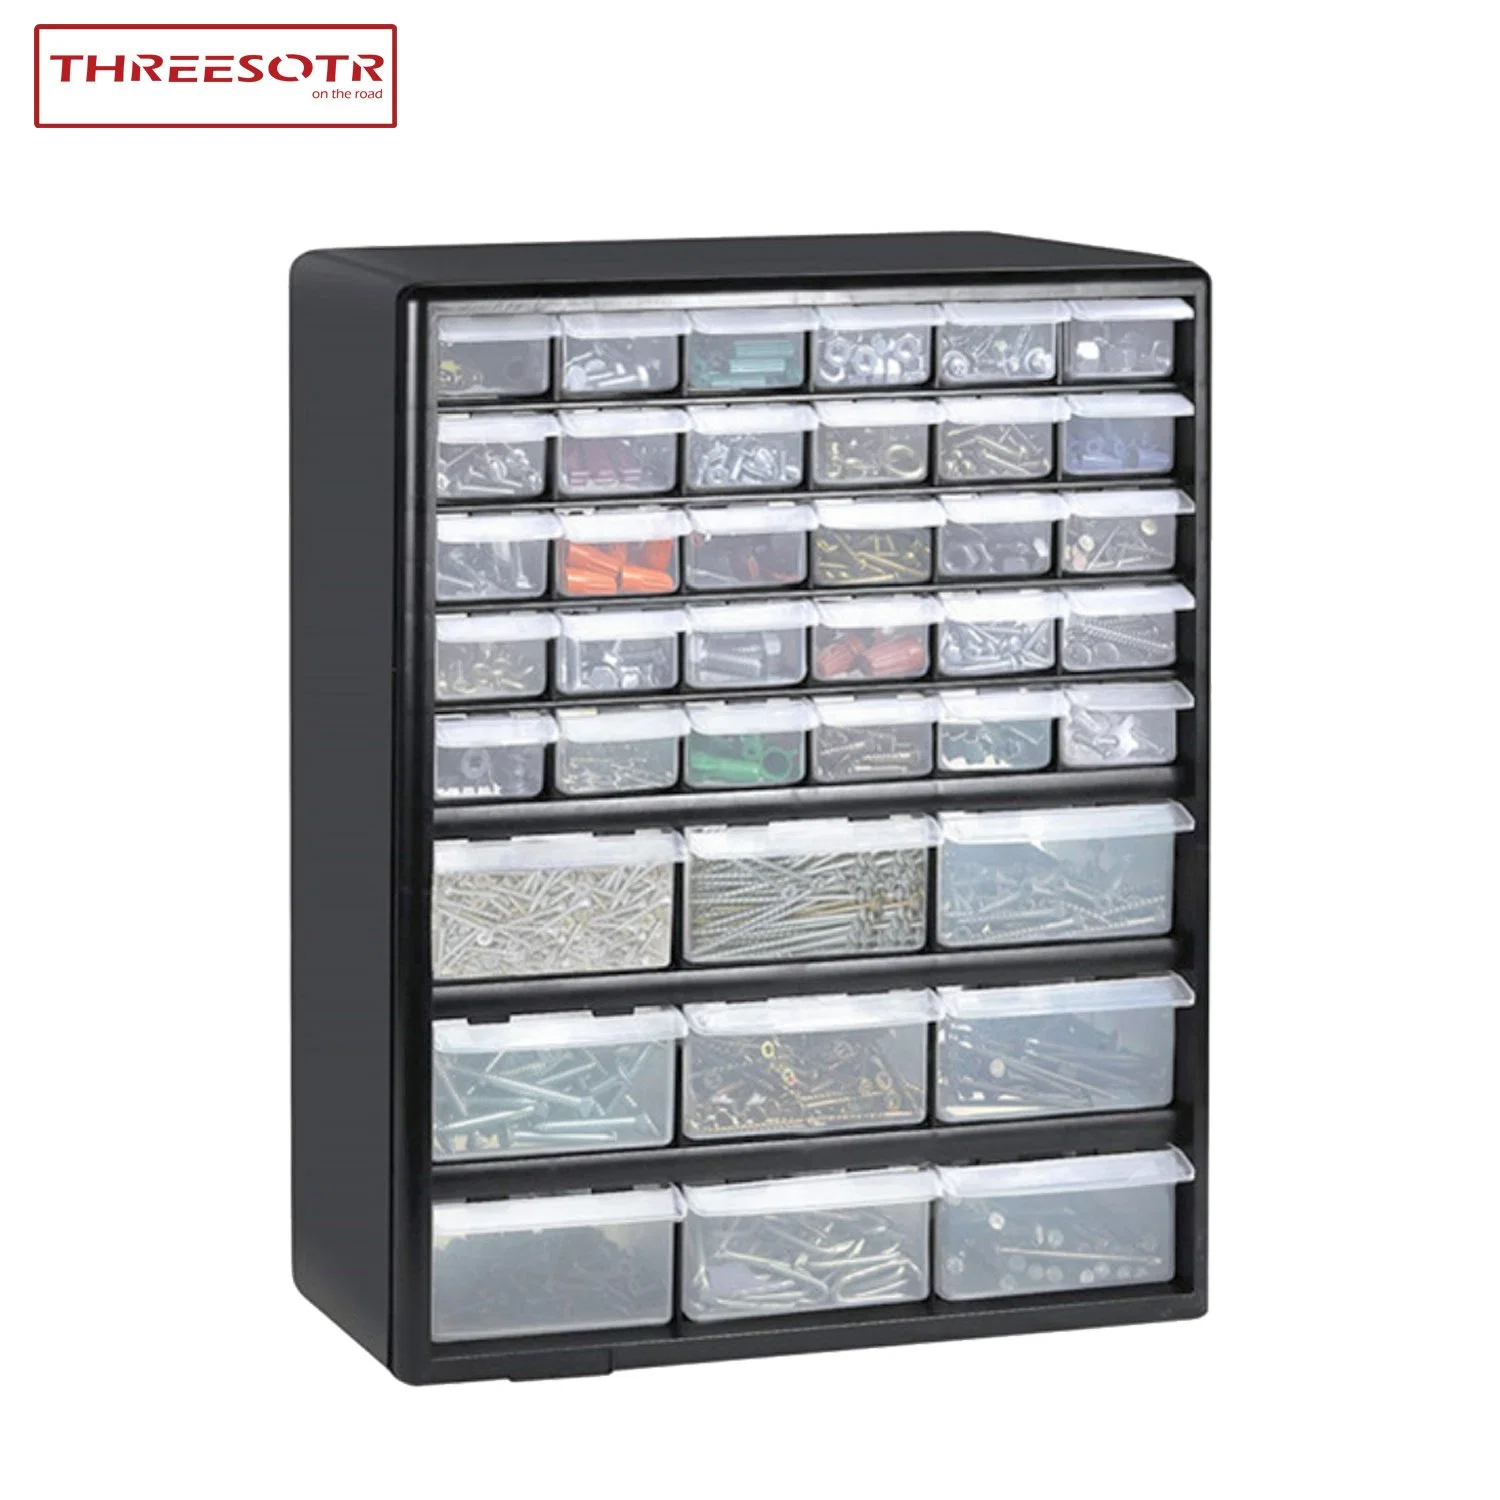 18 Bins Plastic Drawer Parts Storage Organizer Hardware and Craft Cabinet